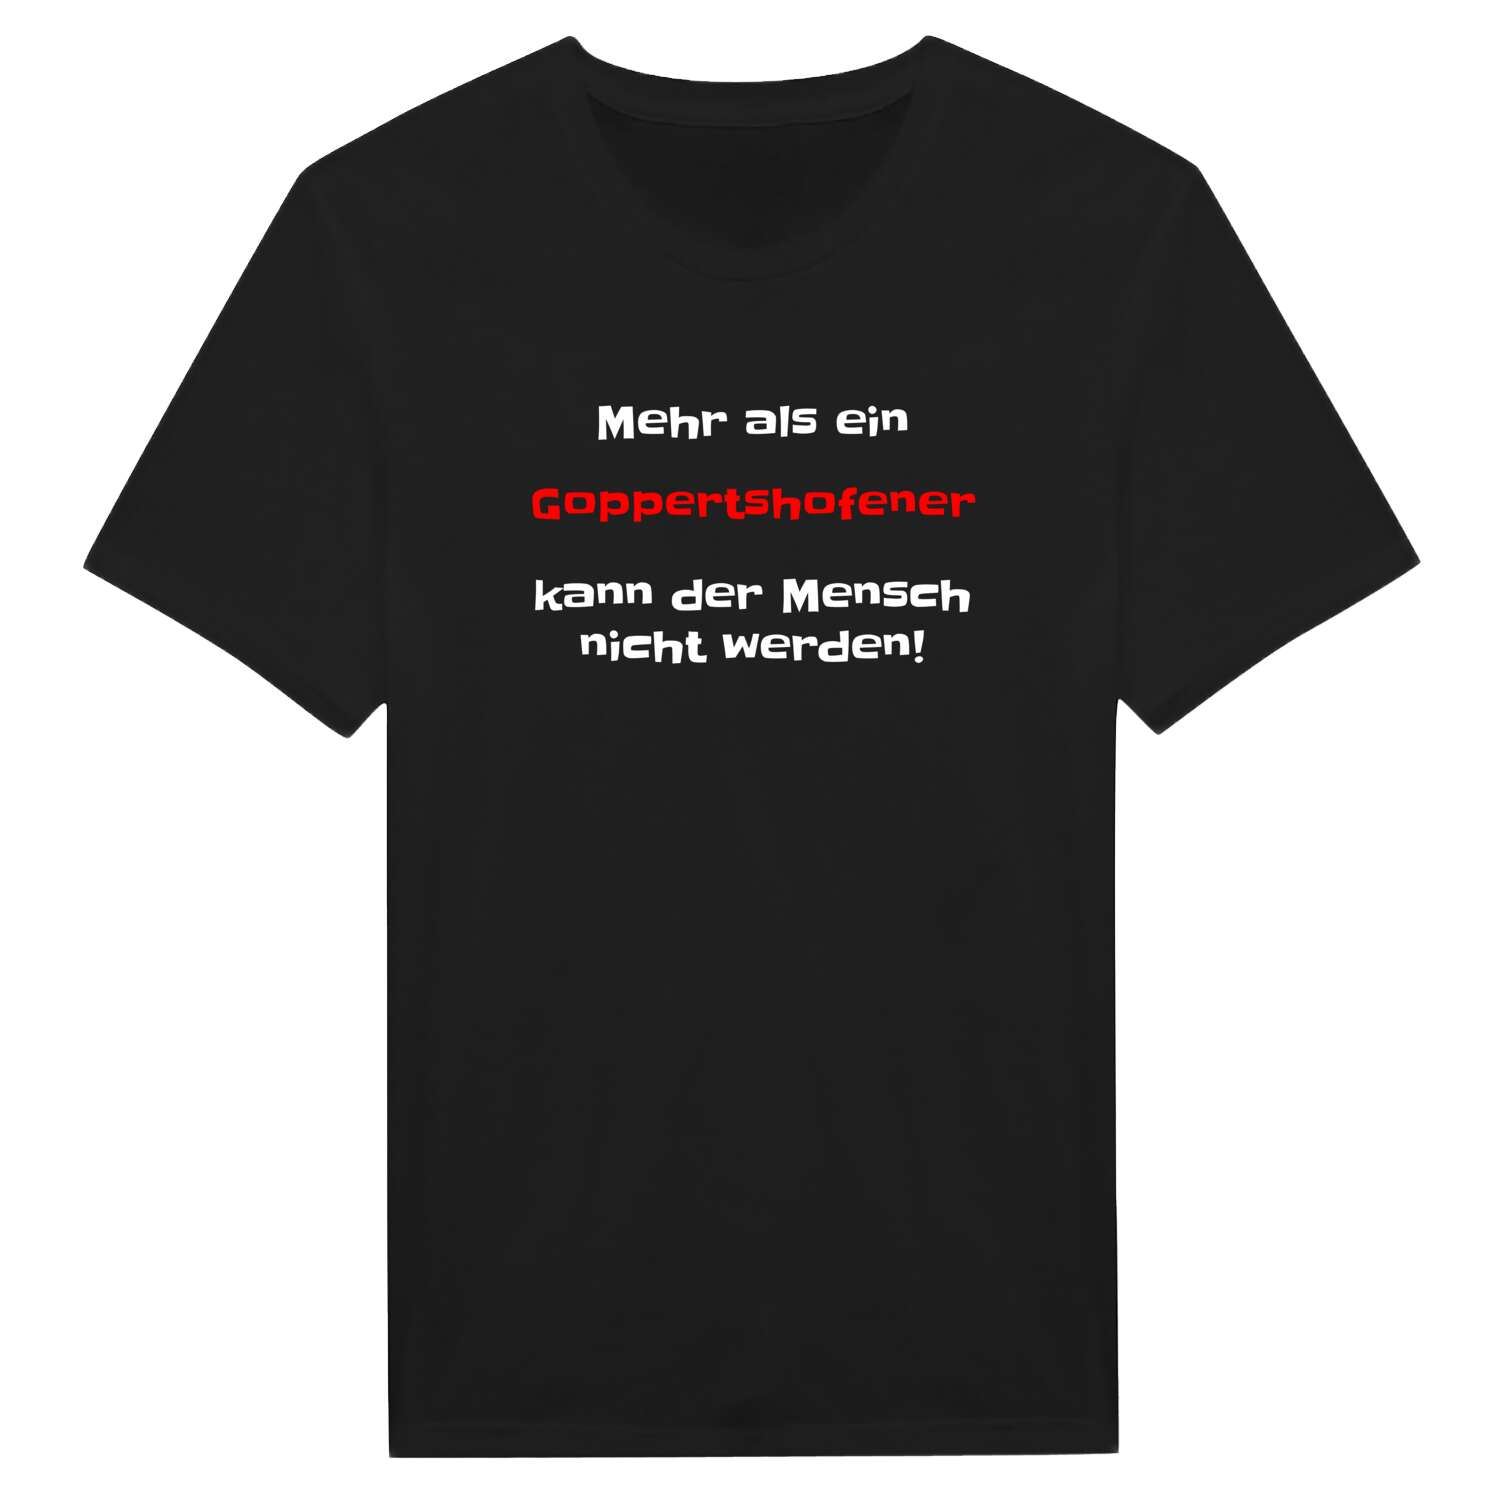 Goppertshofen T-Shirt »Mehr als ein«